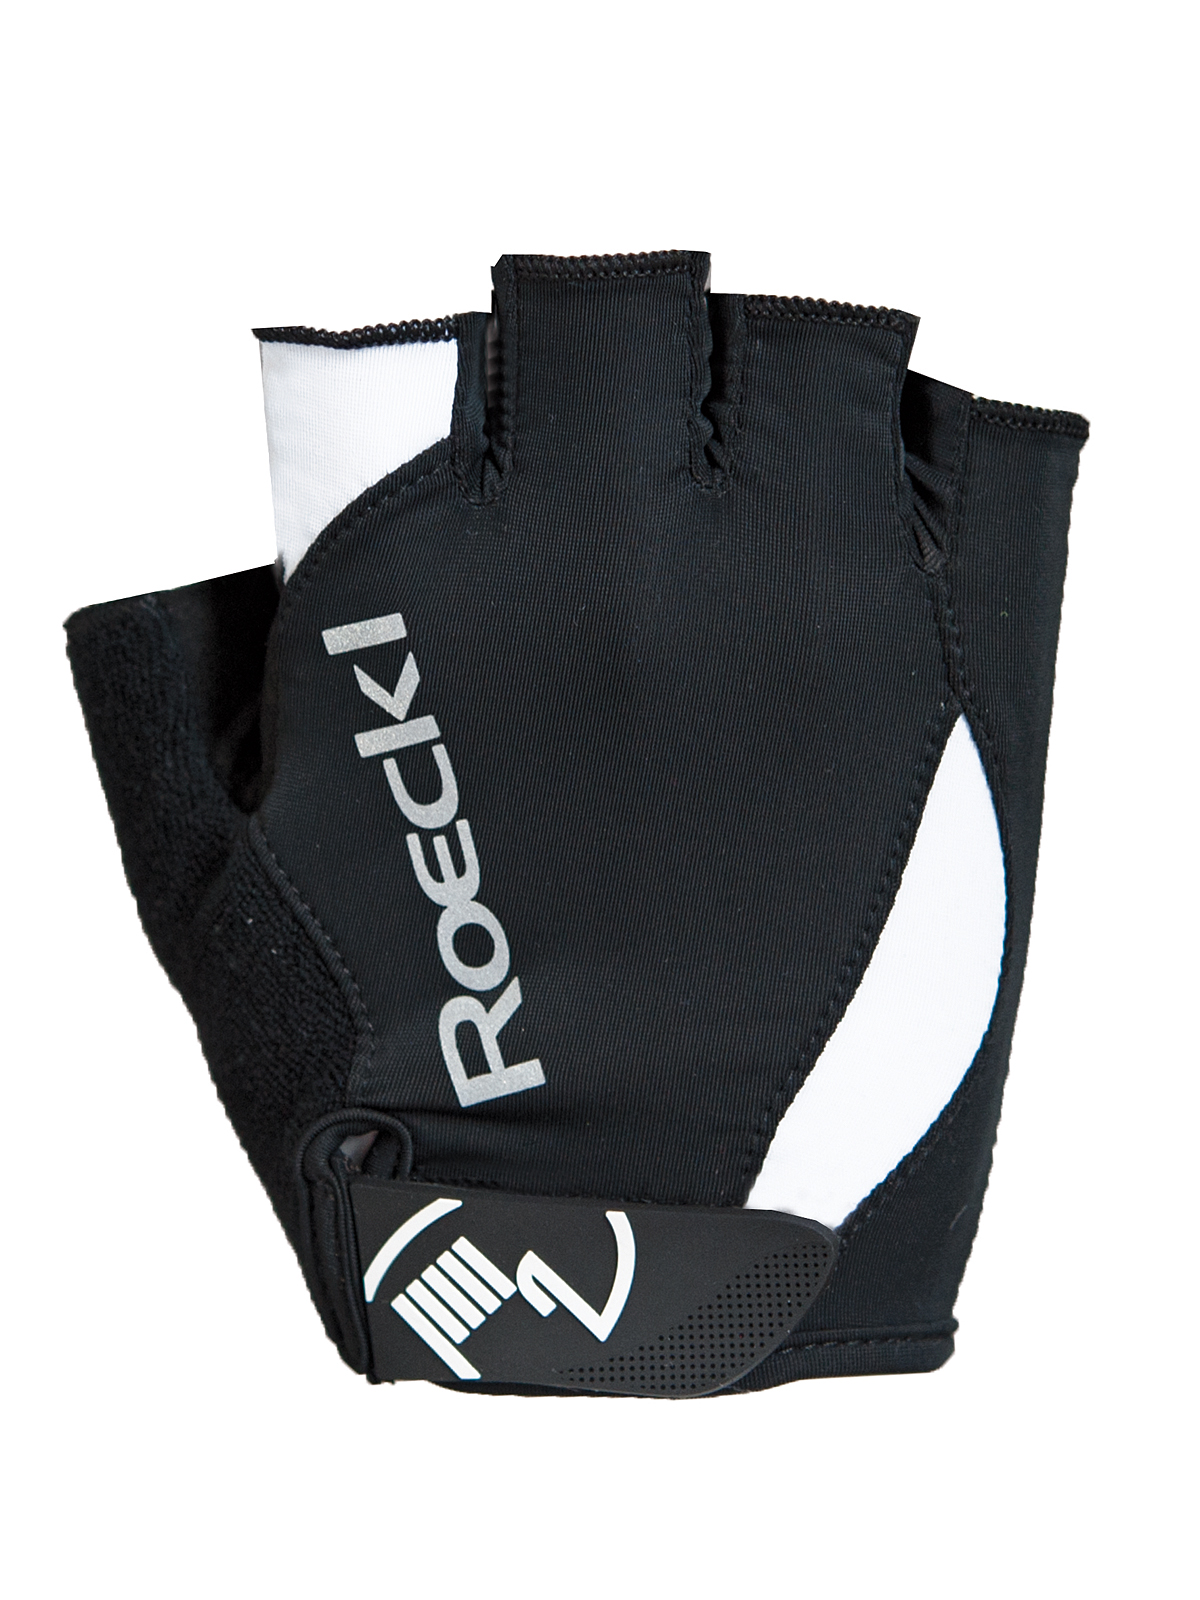 Roeckl Baku Fahrrad Handschuhe kurz schwarz/weiß 2019 